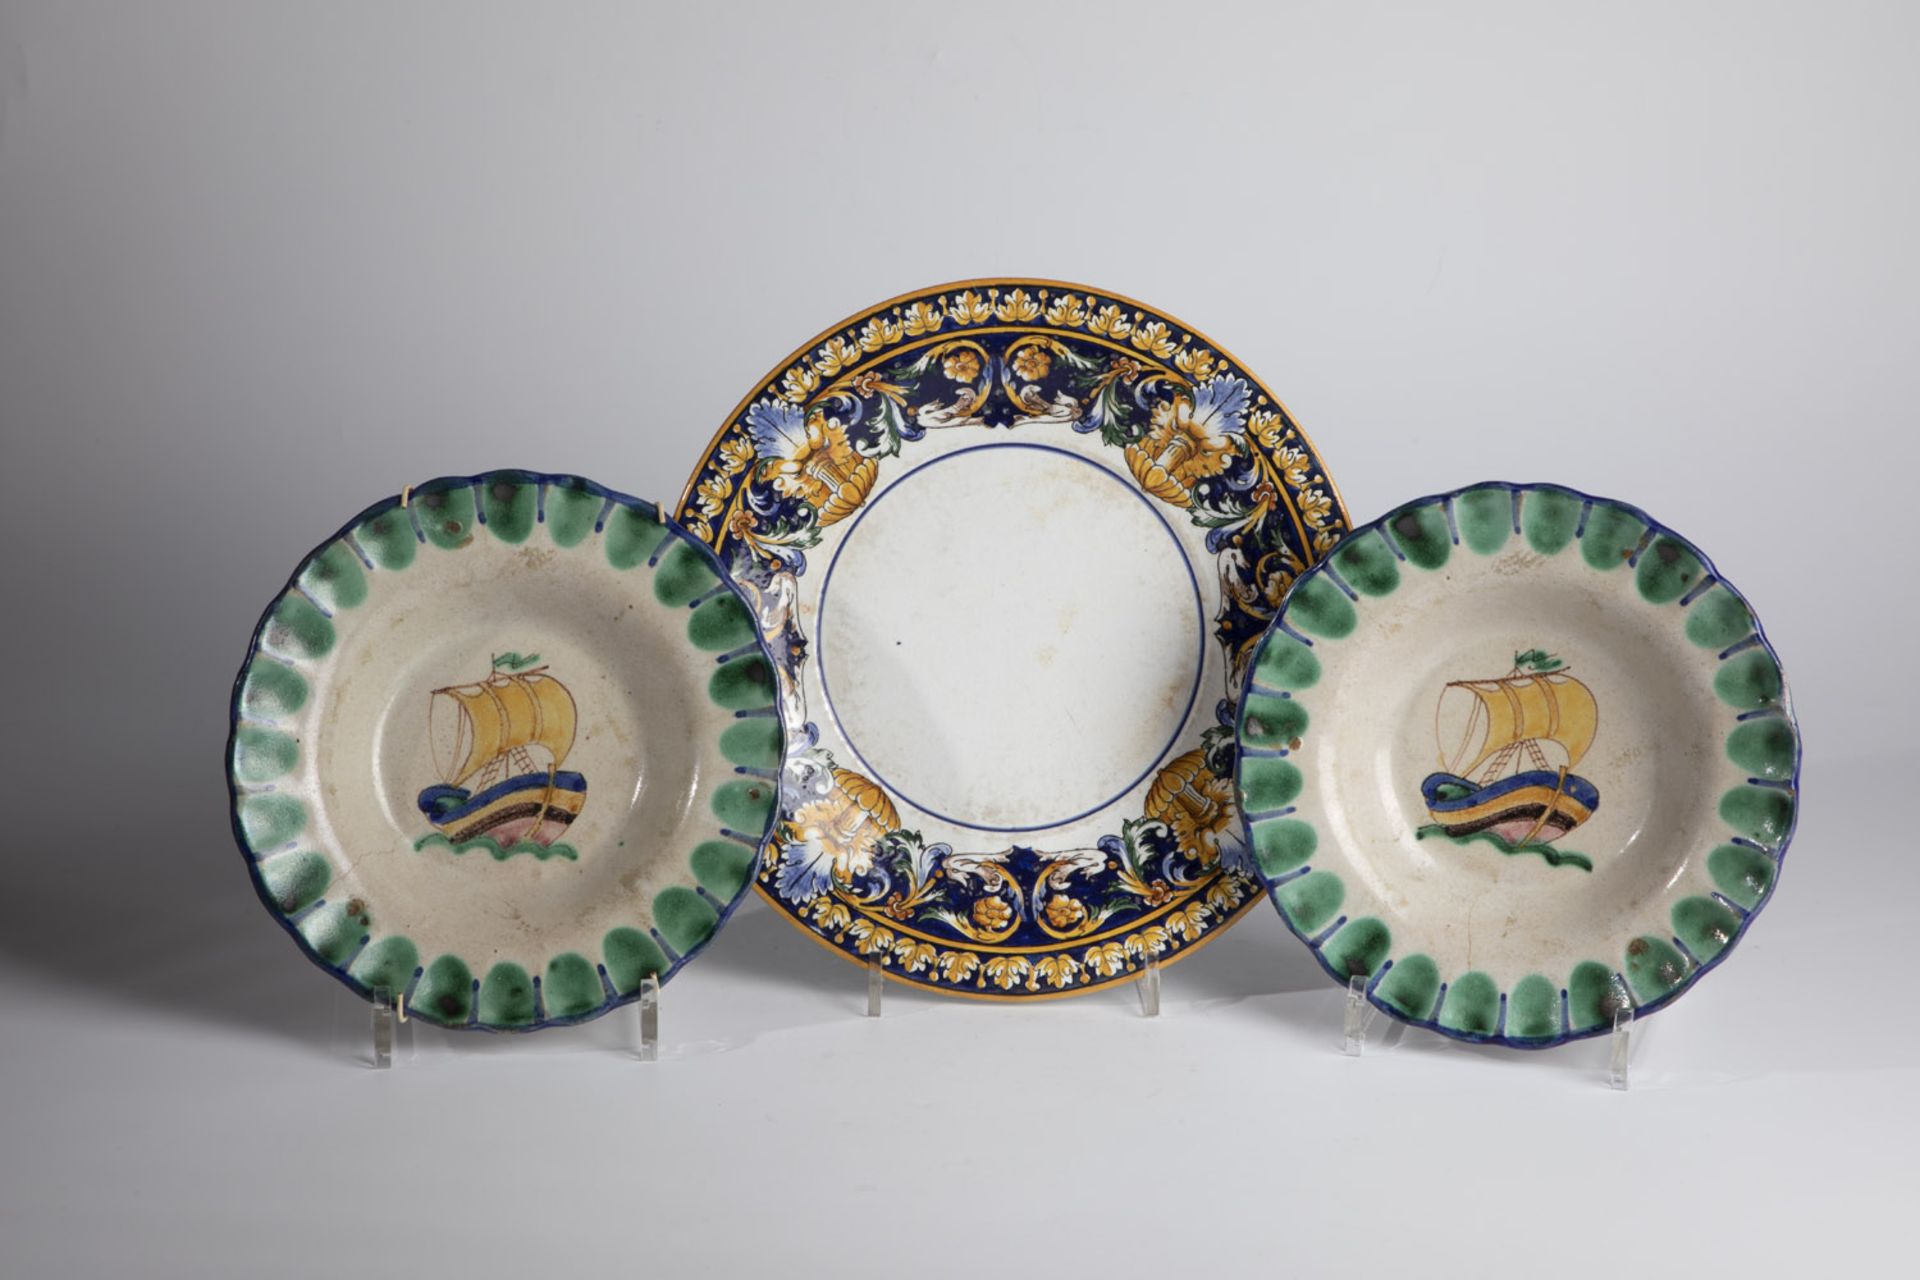 Three ceramic plates